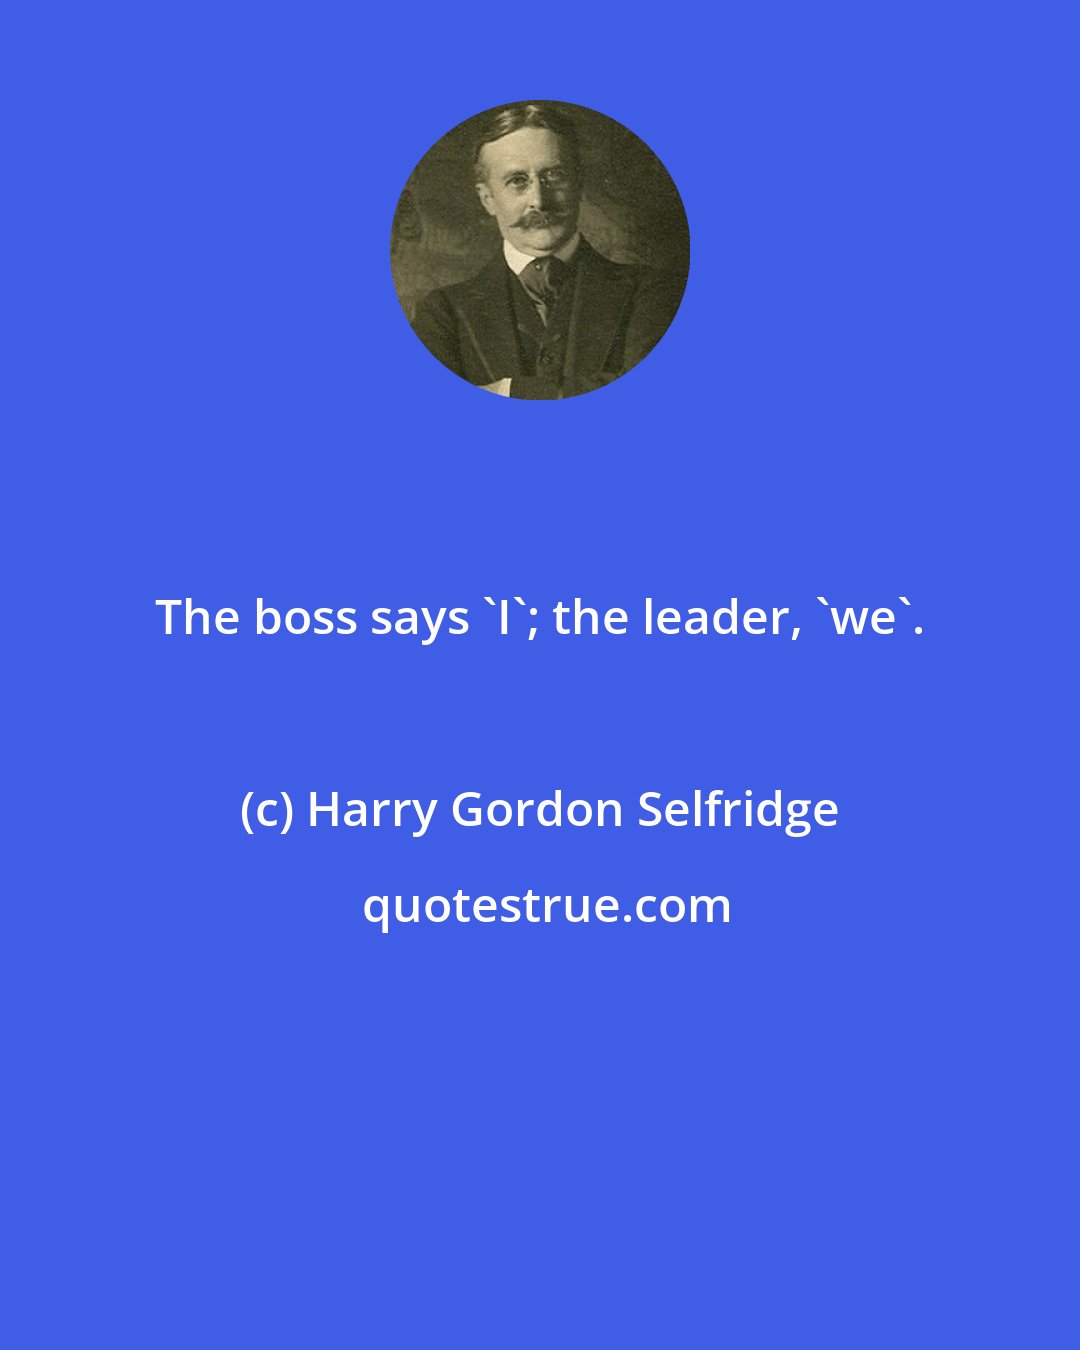 Harry Gordon Selfridge: The boss says 'I'; the leader, 'we'.